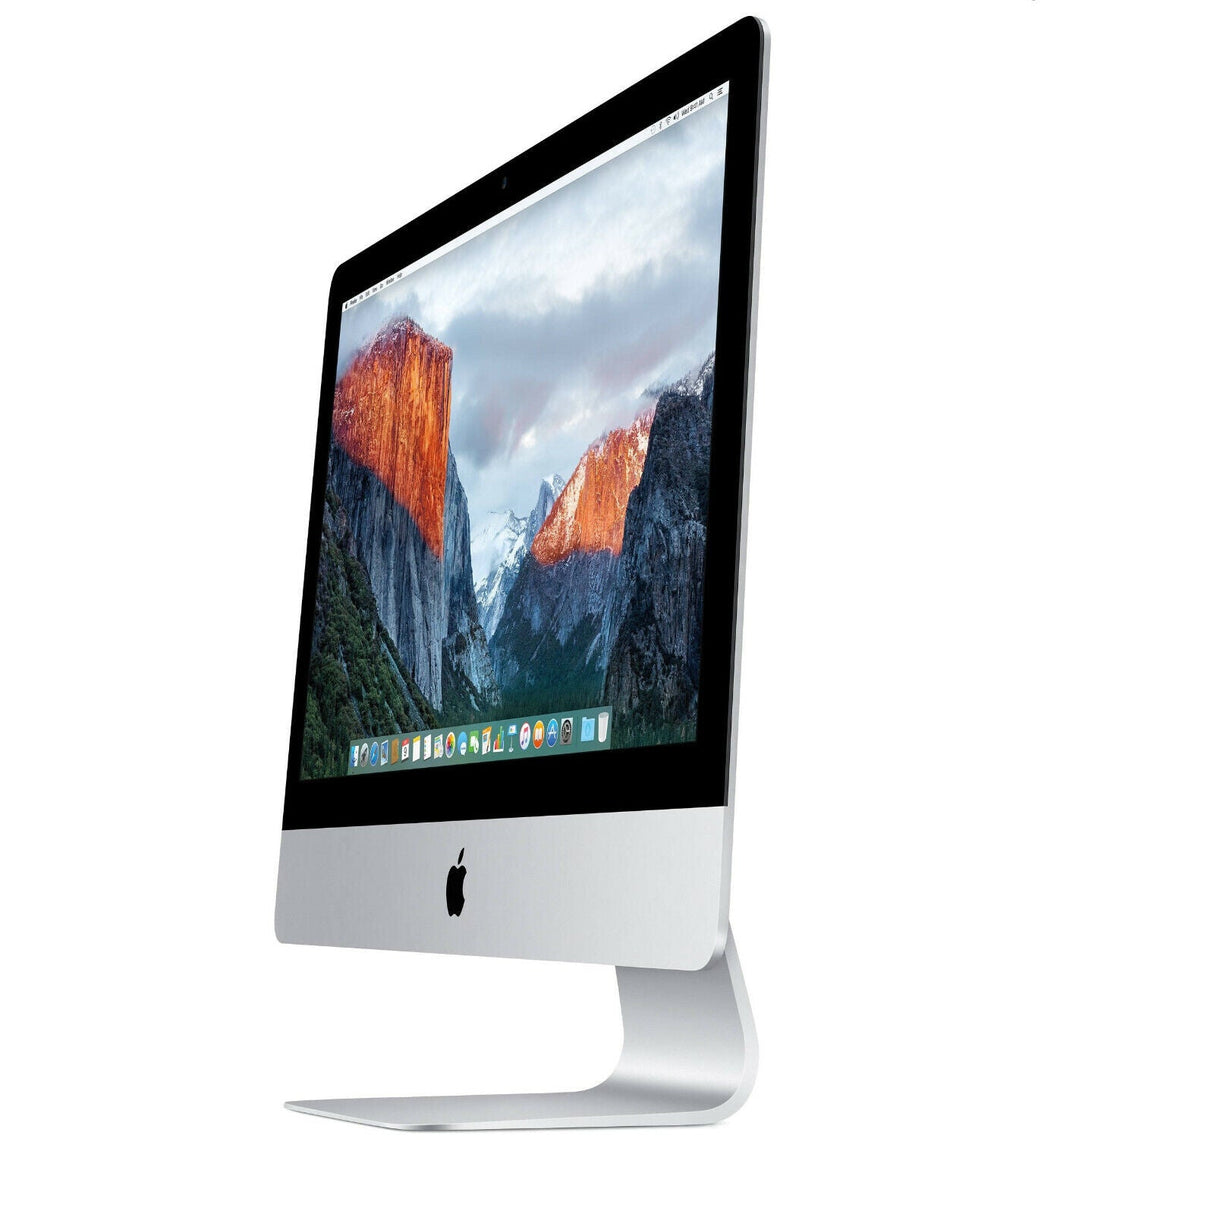 Apple iMac A1418 21.5" 2013 i5-4570S 8GB RAM 128GB SSD 1TB HDD Catalina GT 750M